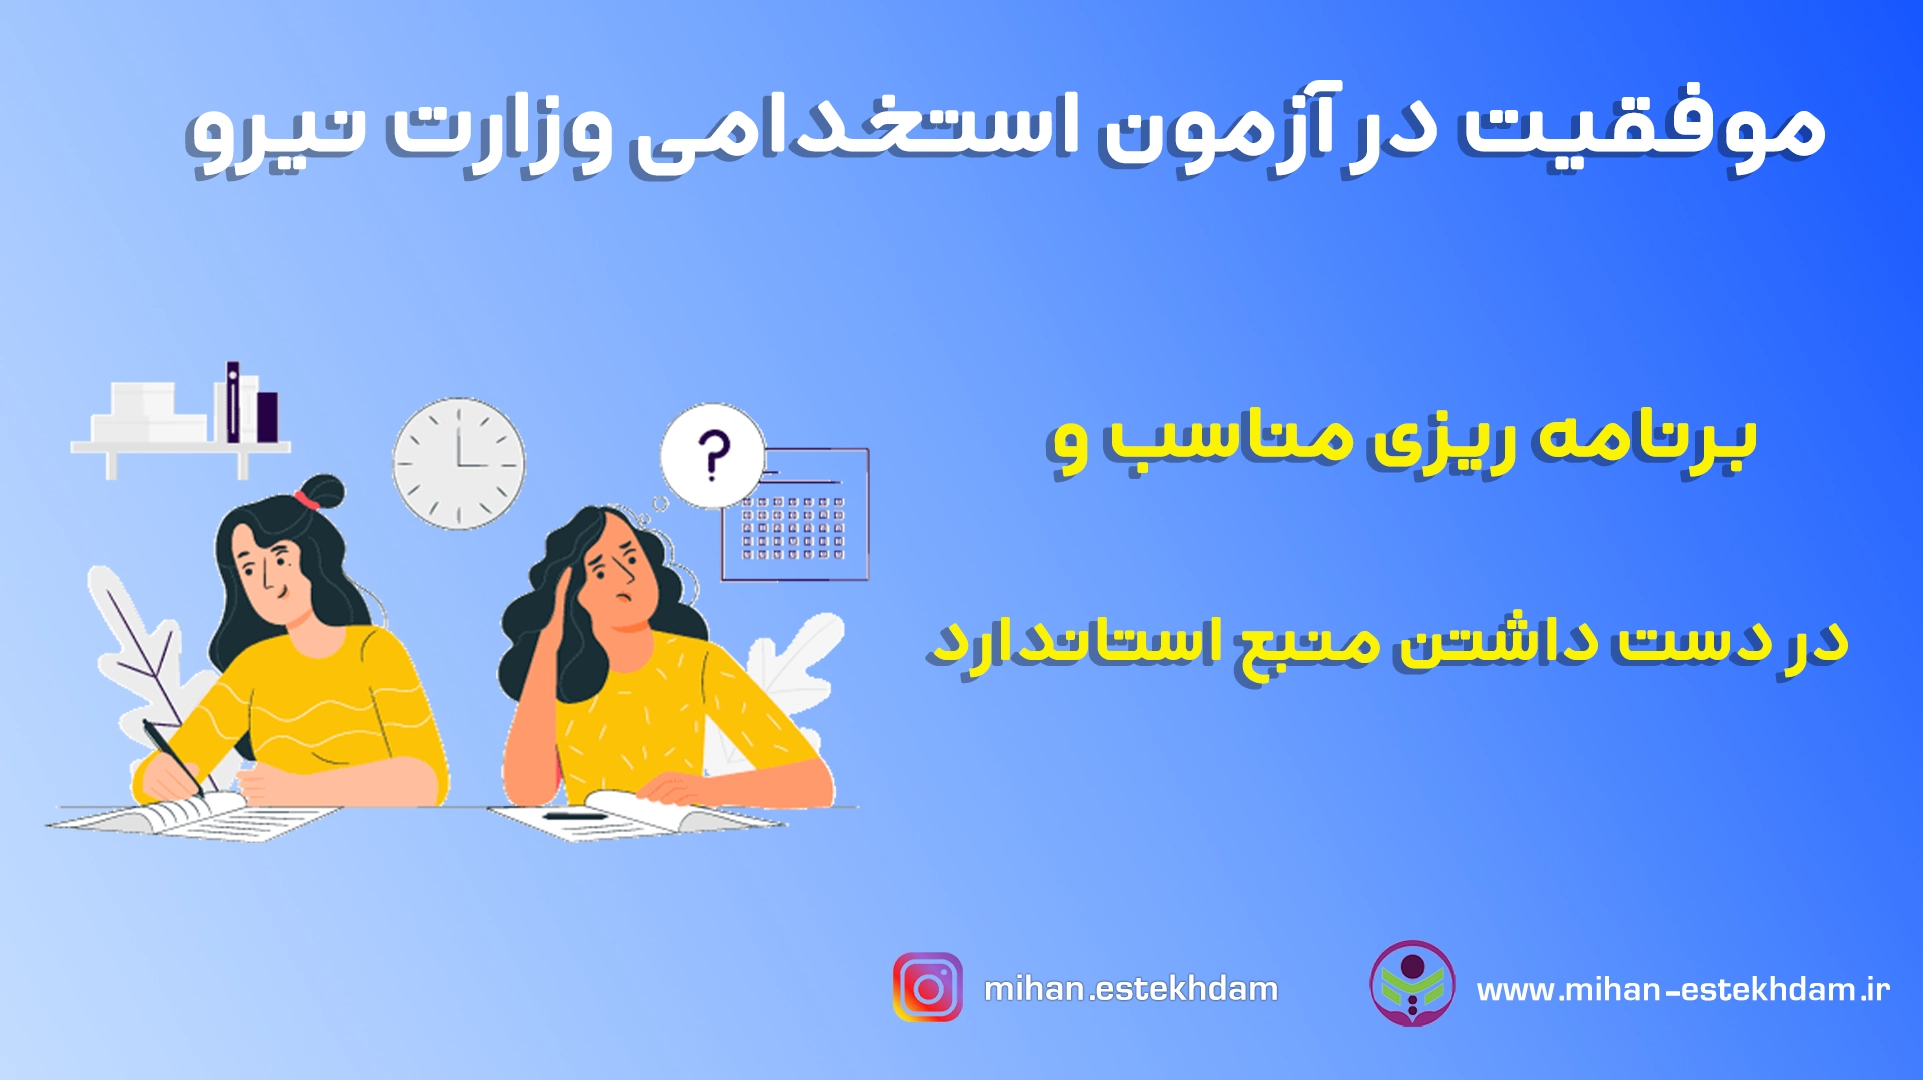 قبولی در آزمون استخدامی وزارت نیرو با سوالات استخدامی وزارت نیرو